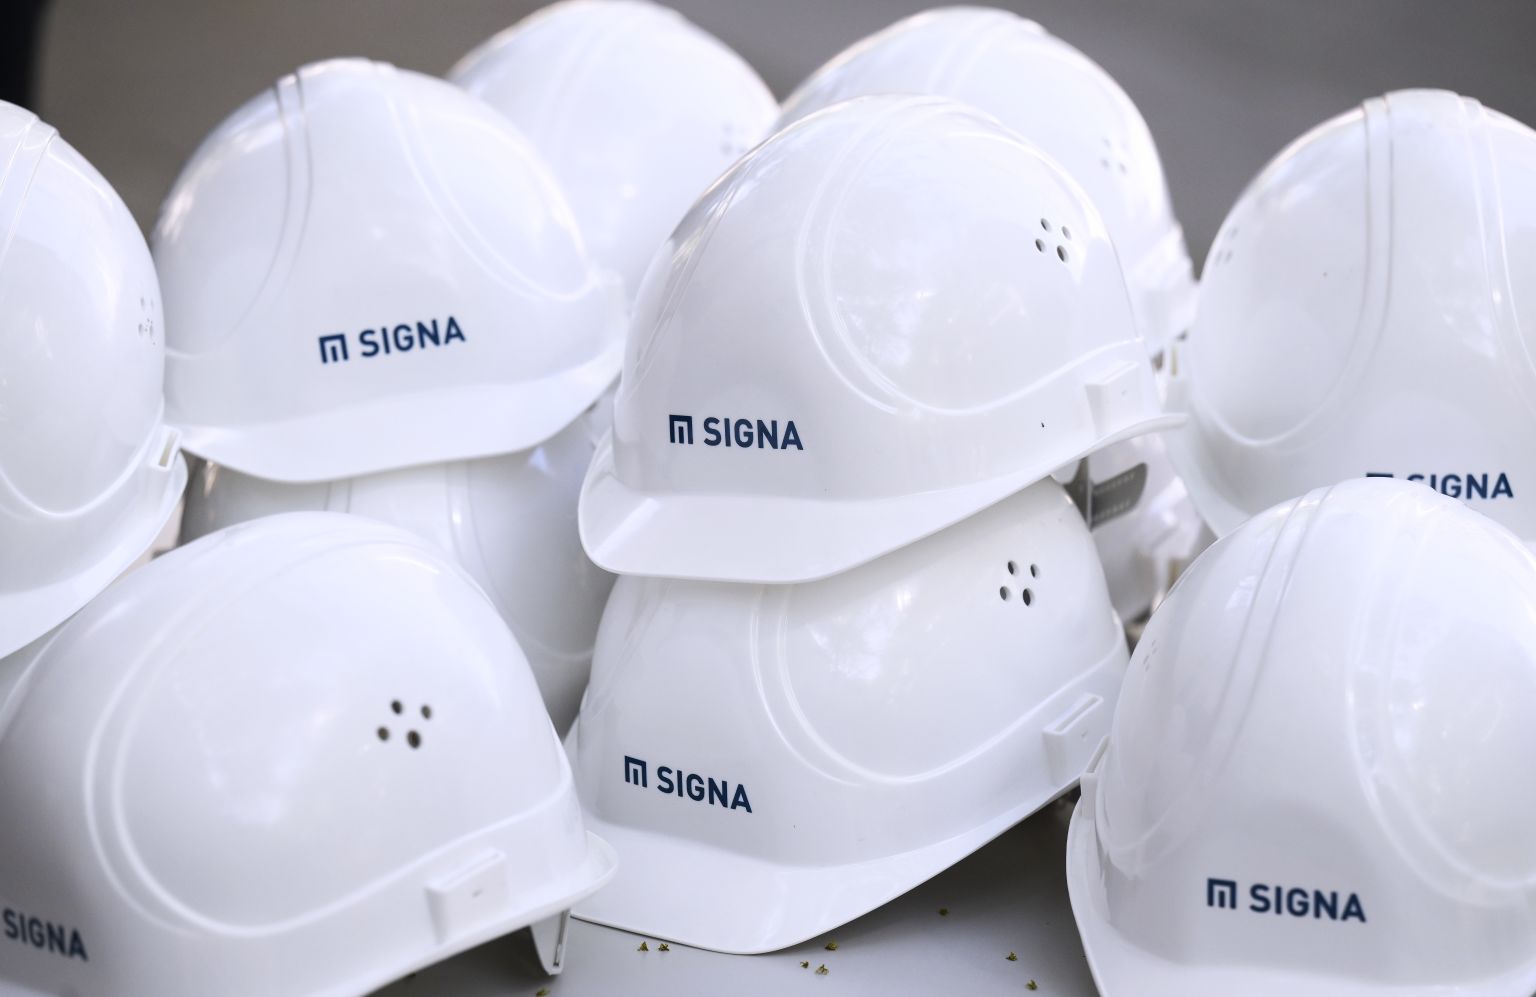 Signa Development - Portfoliowert schmolz von 3 auf 2,1 Mrd. Euro